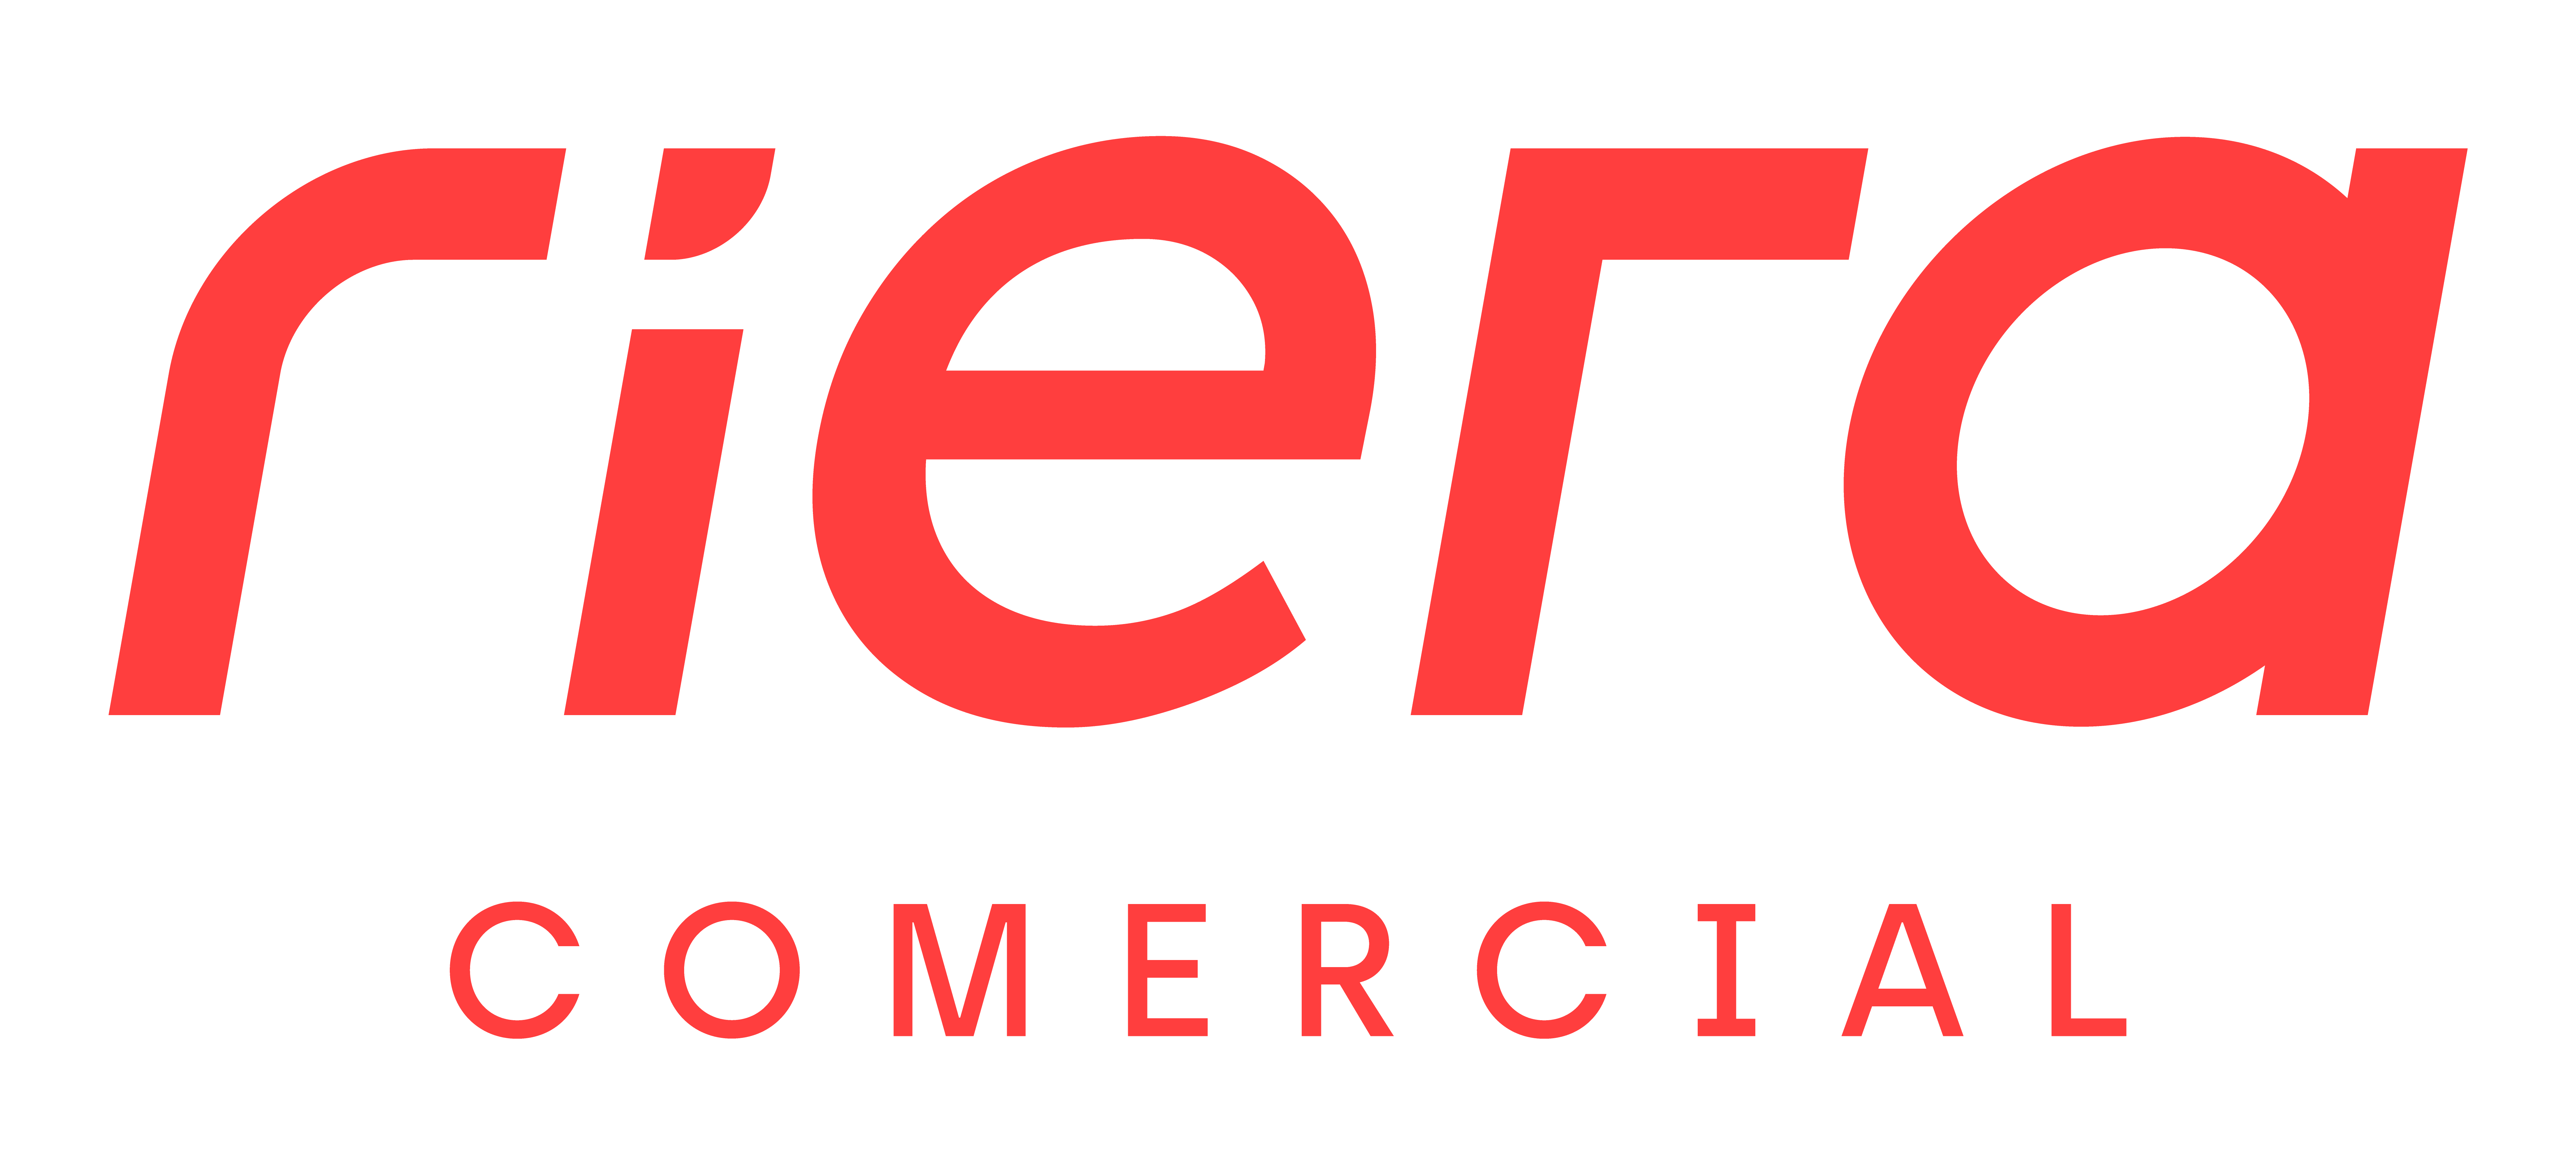 Riera Comercial Logo